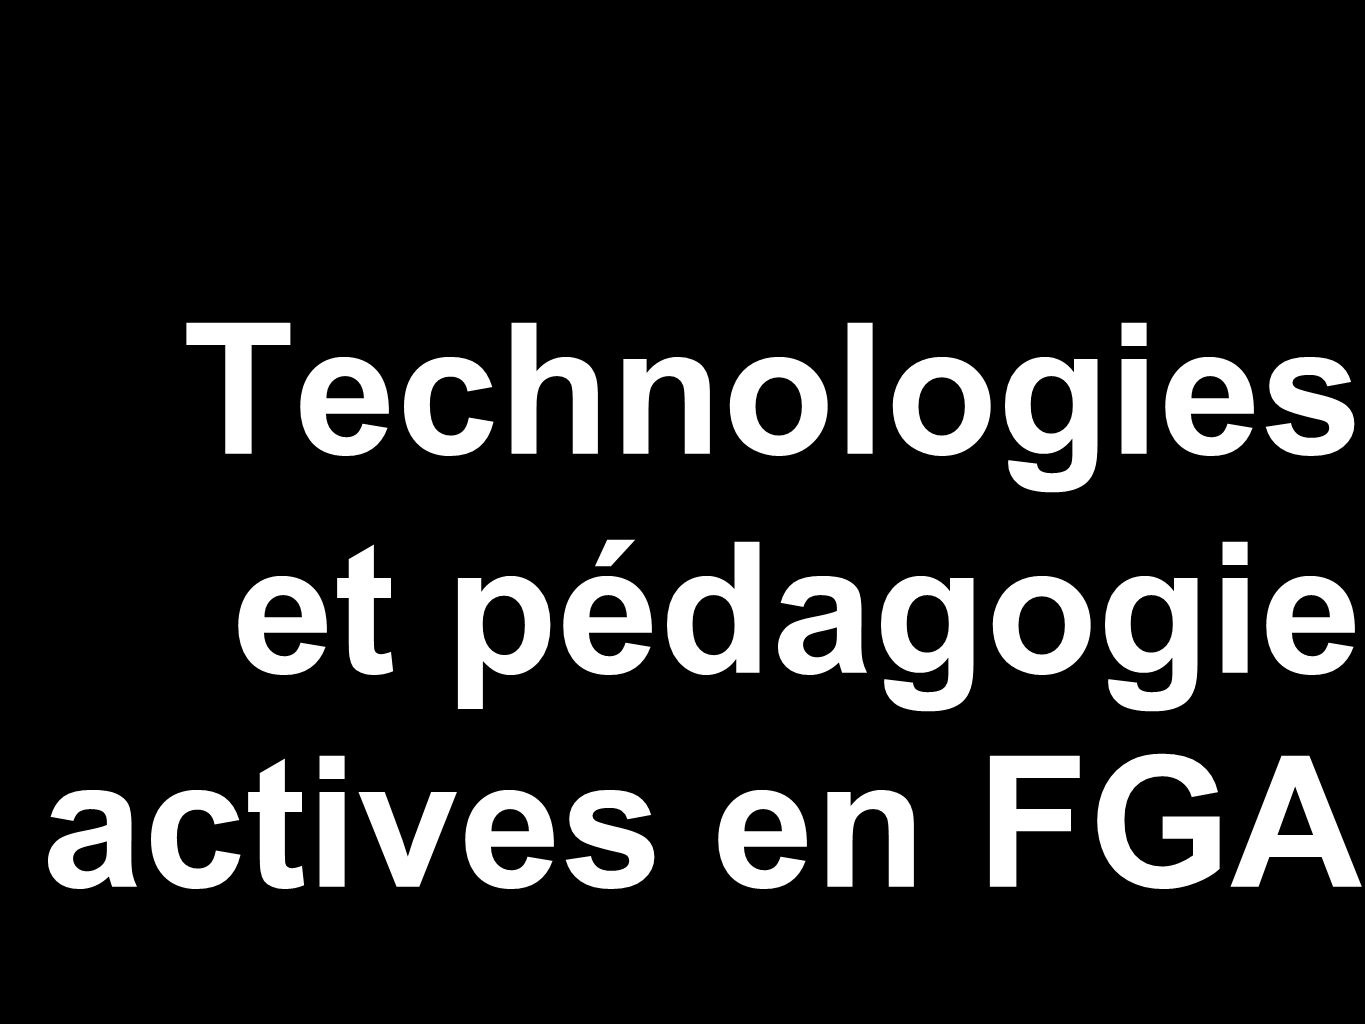 Technologies et pédagogie actives en FGA